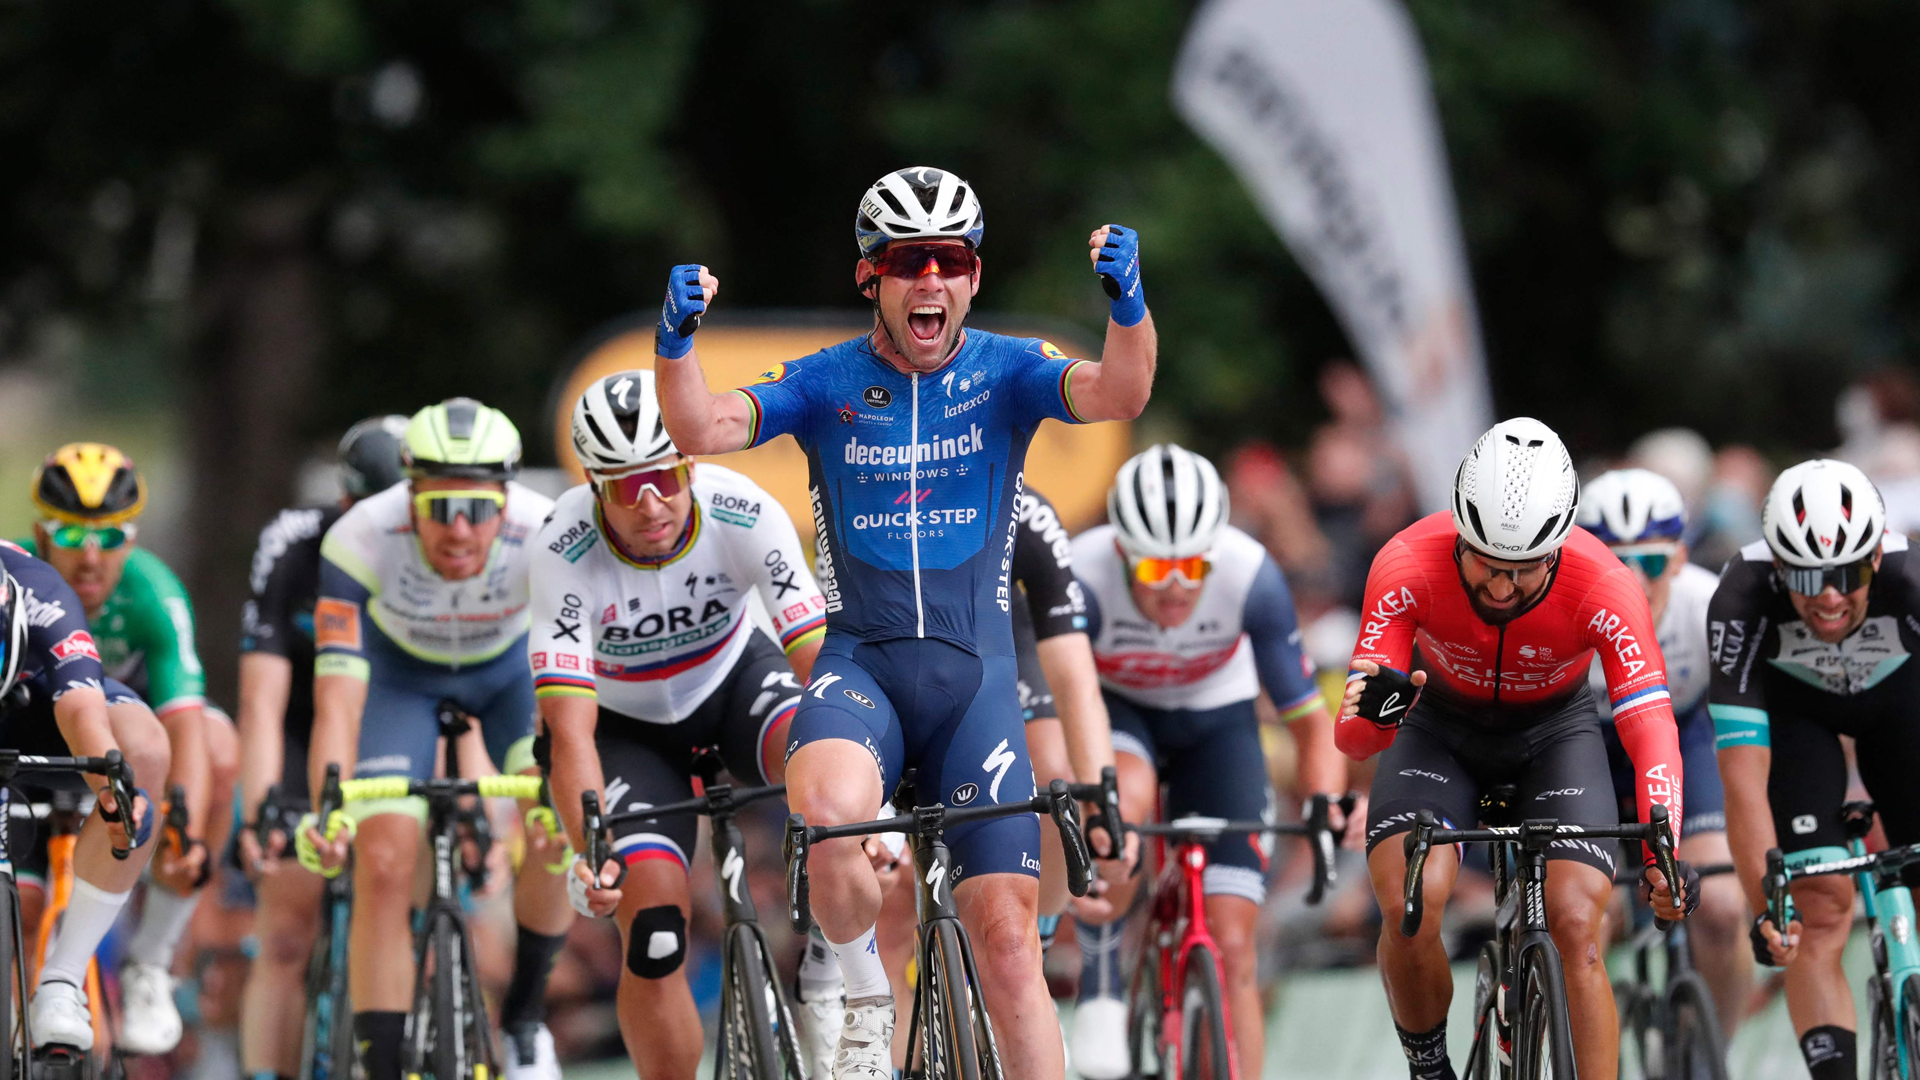 Tour De France: Cavendish wins Stage 4 